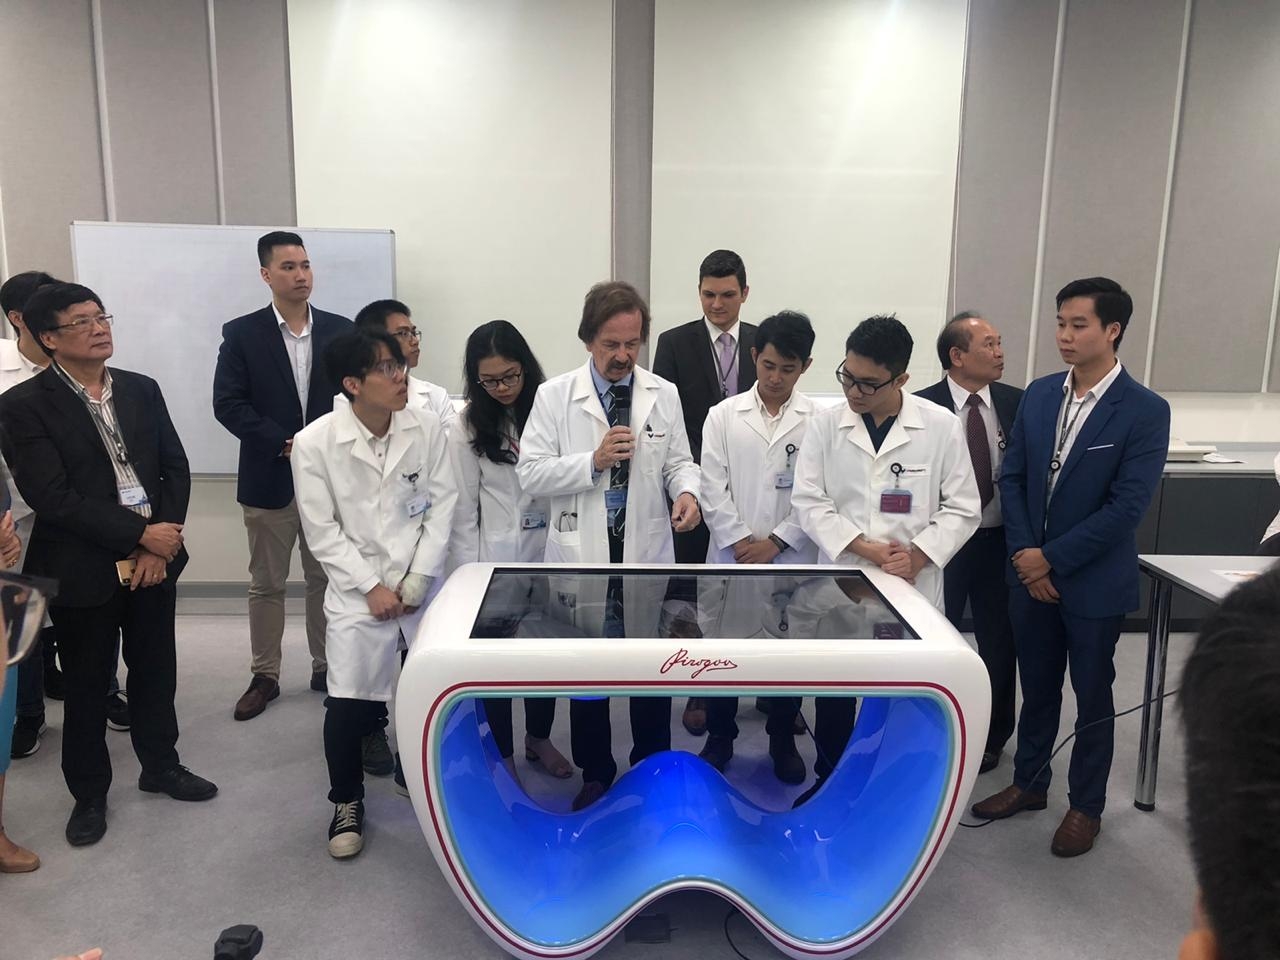 Интерактивный анатомический стол «Пирогов» будут использовать во вьетнамском университете